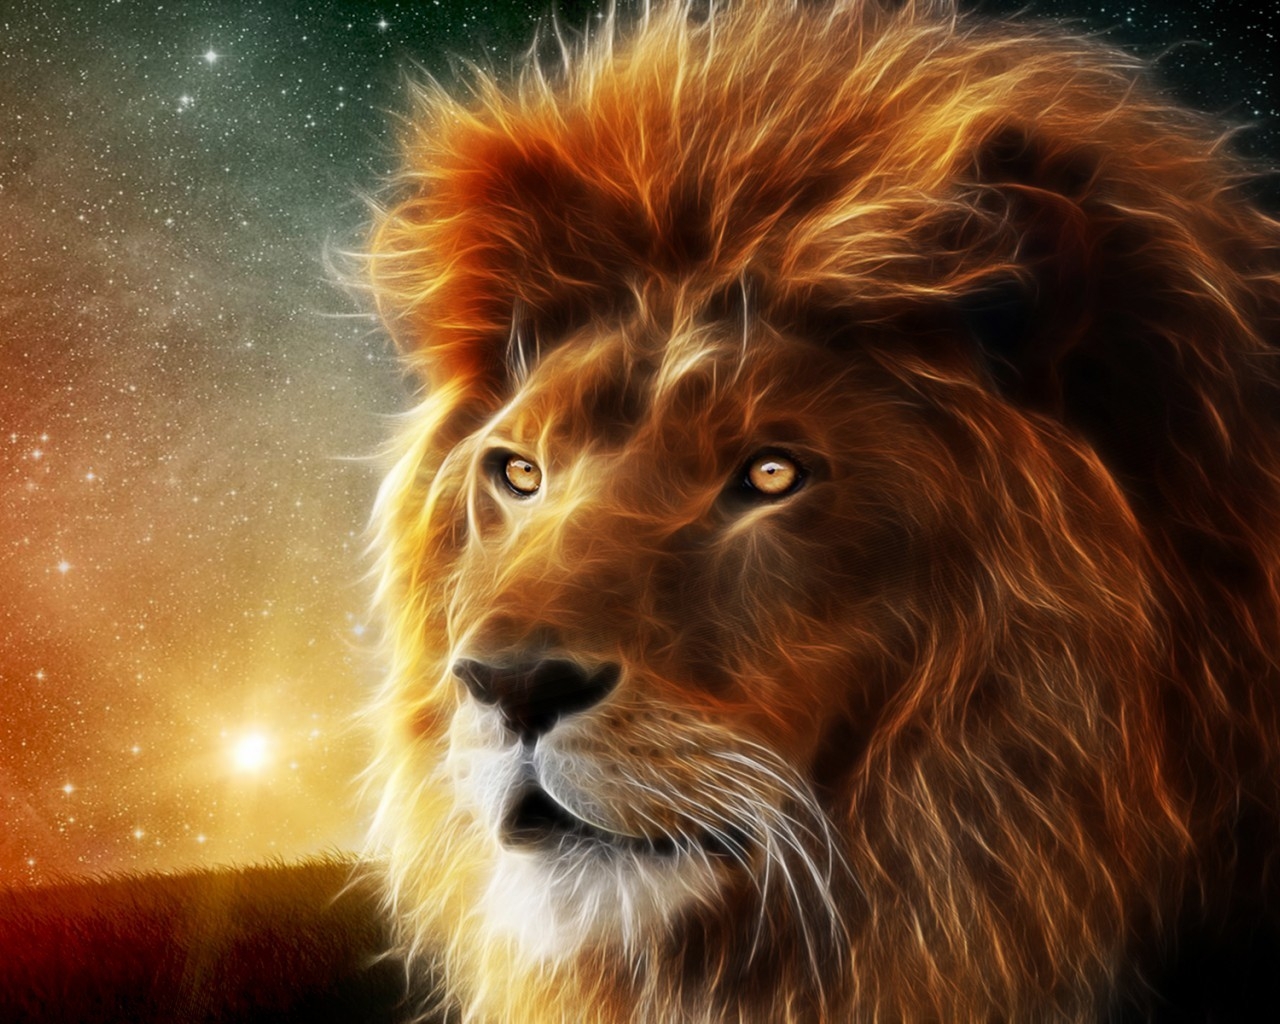 Lion Portrait for 1280 x 1024 resolution